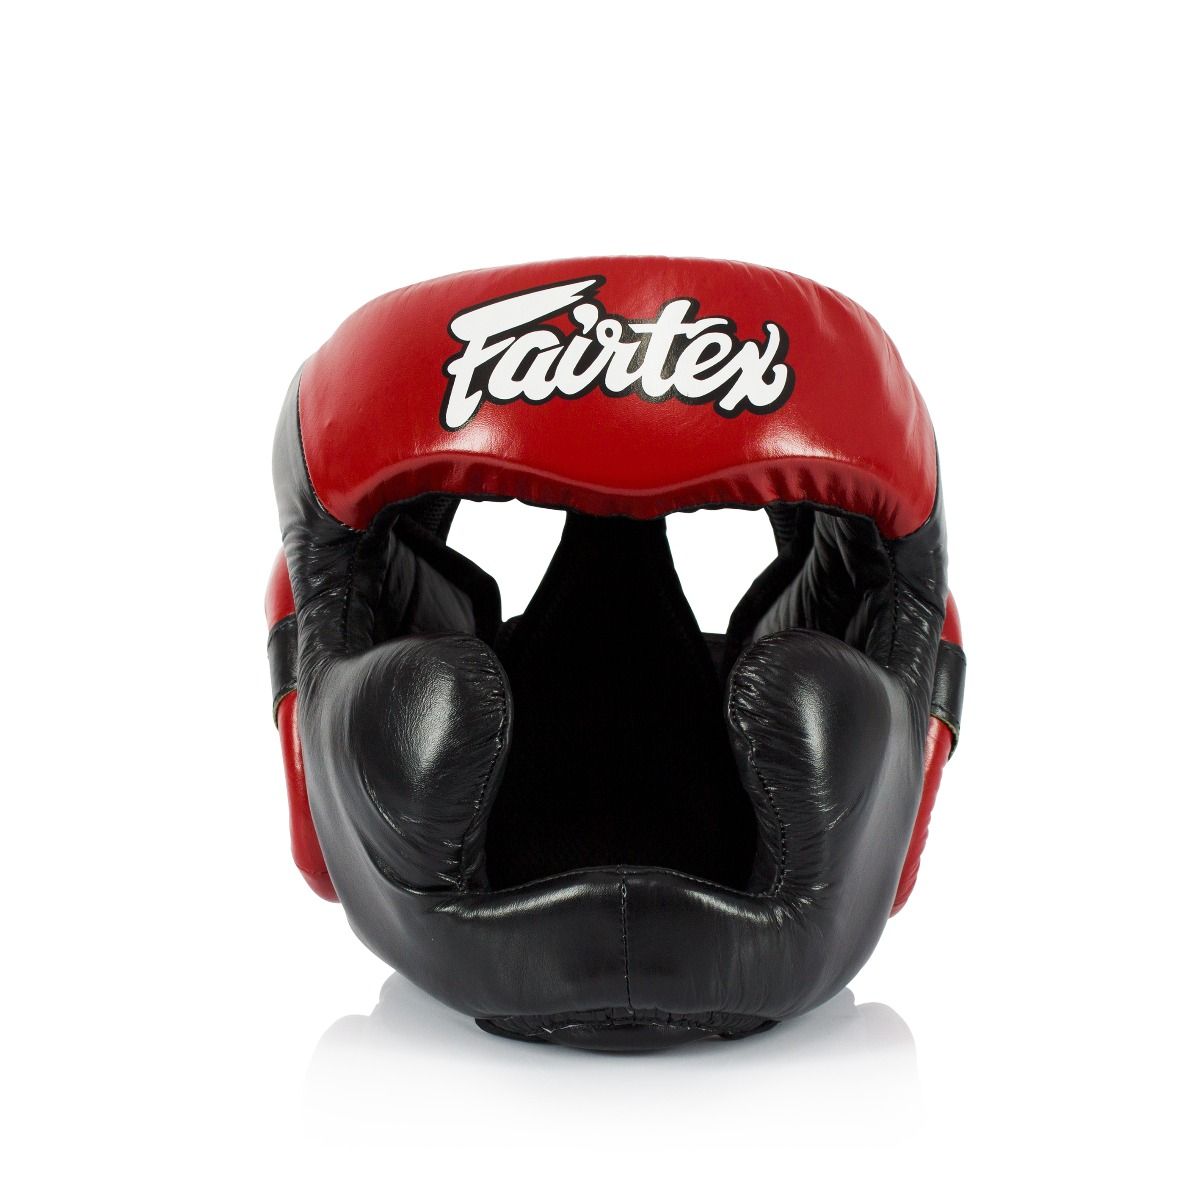 FAIRTEX HEAD PROTECTION HG13FH FULL HEAD COVERAGE DIAGONAL VISION SPARRING HEADGUARD